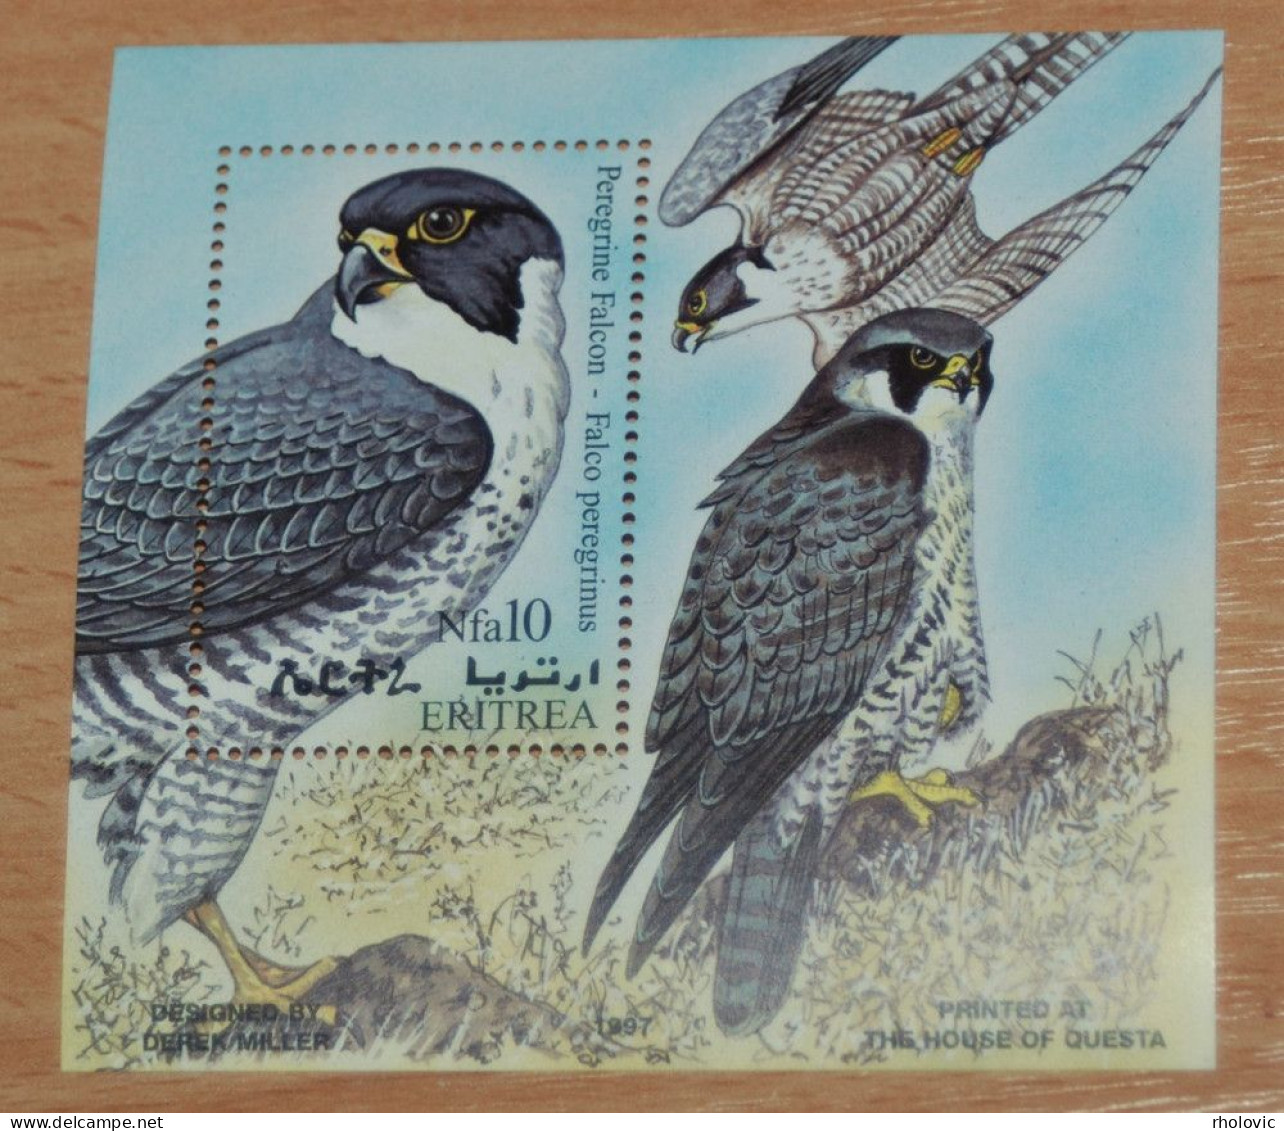 ERITREA 1998, Birds, Animals, Fauna, Mi #B7, Souvenir Sheet, MNH** - Eagles & Birds Of Prey